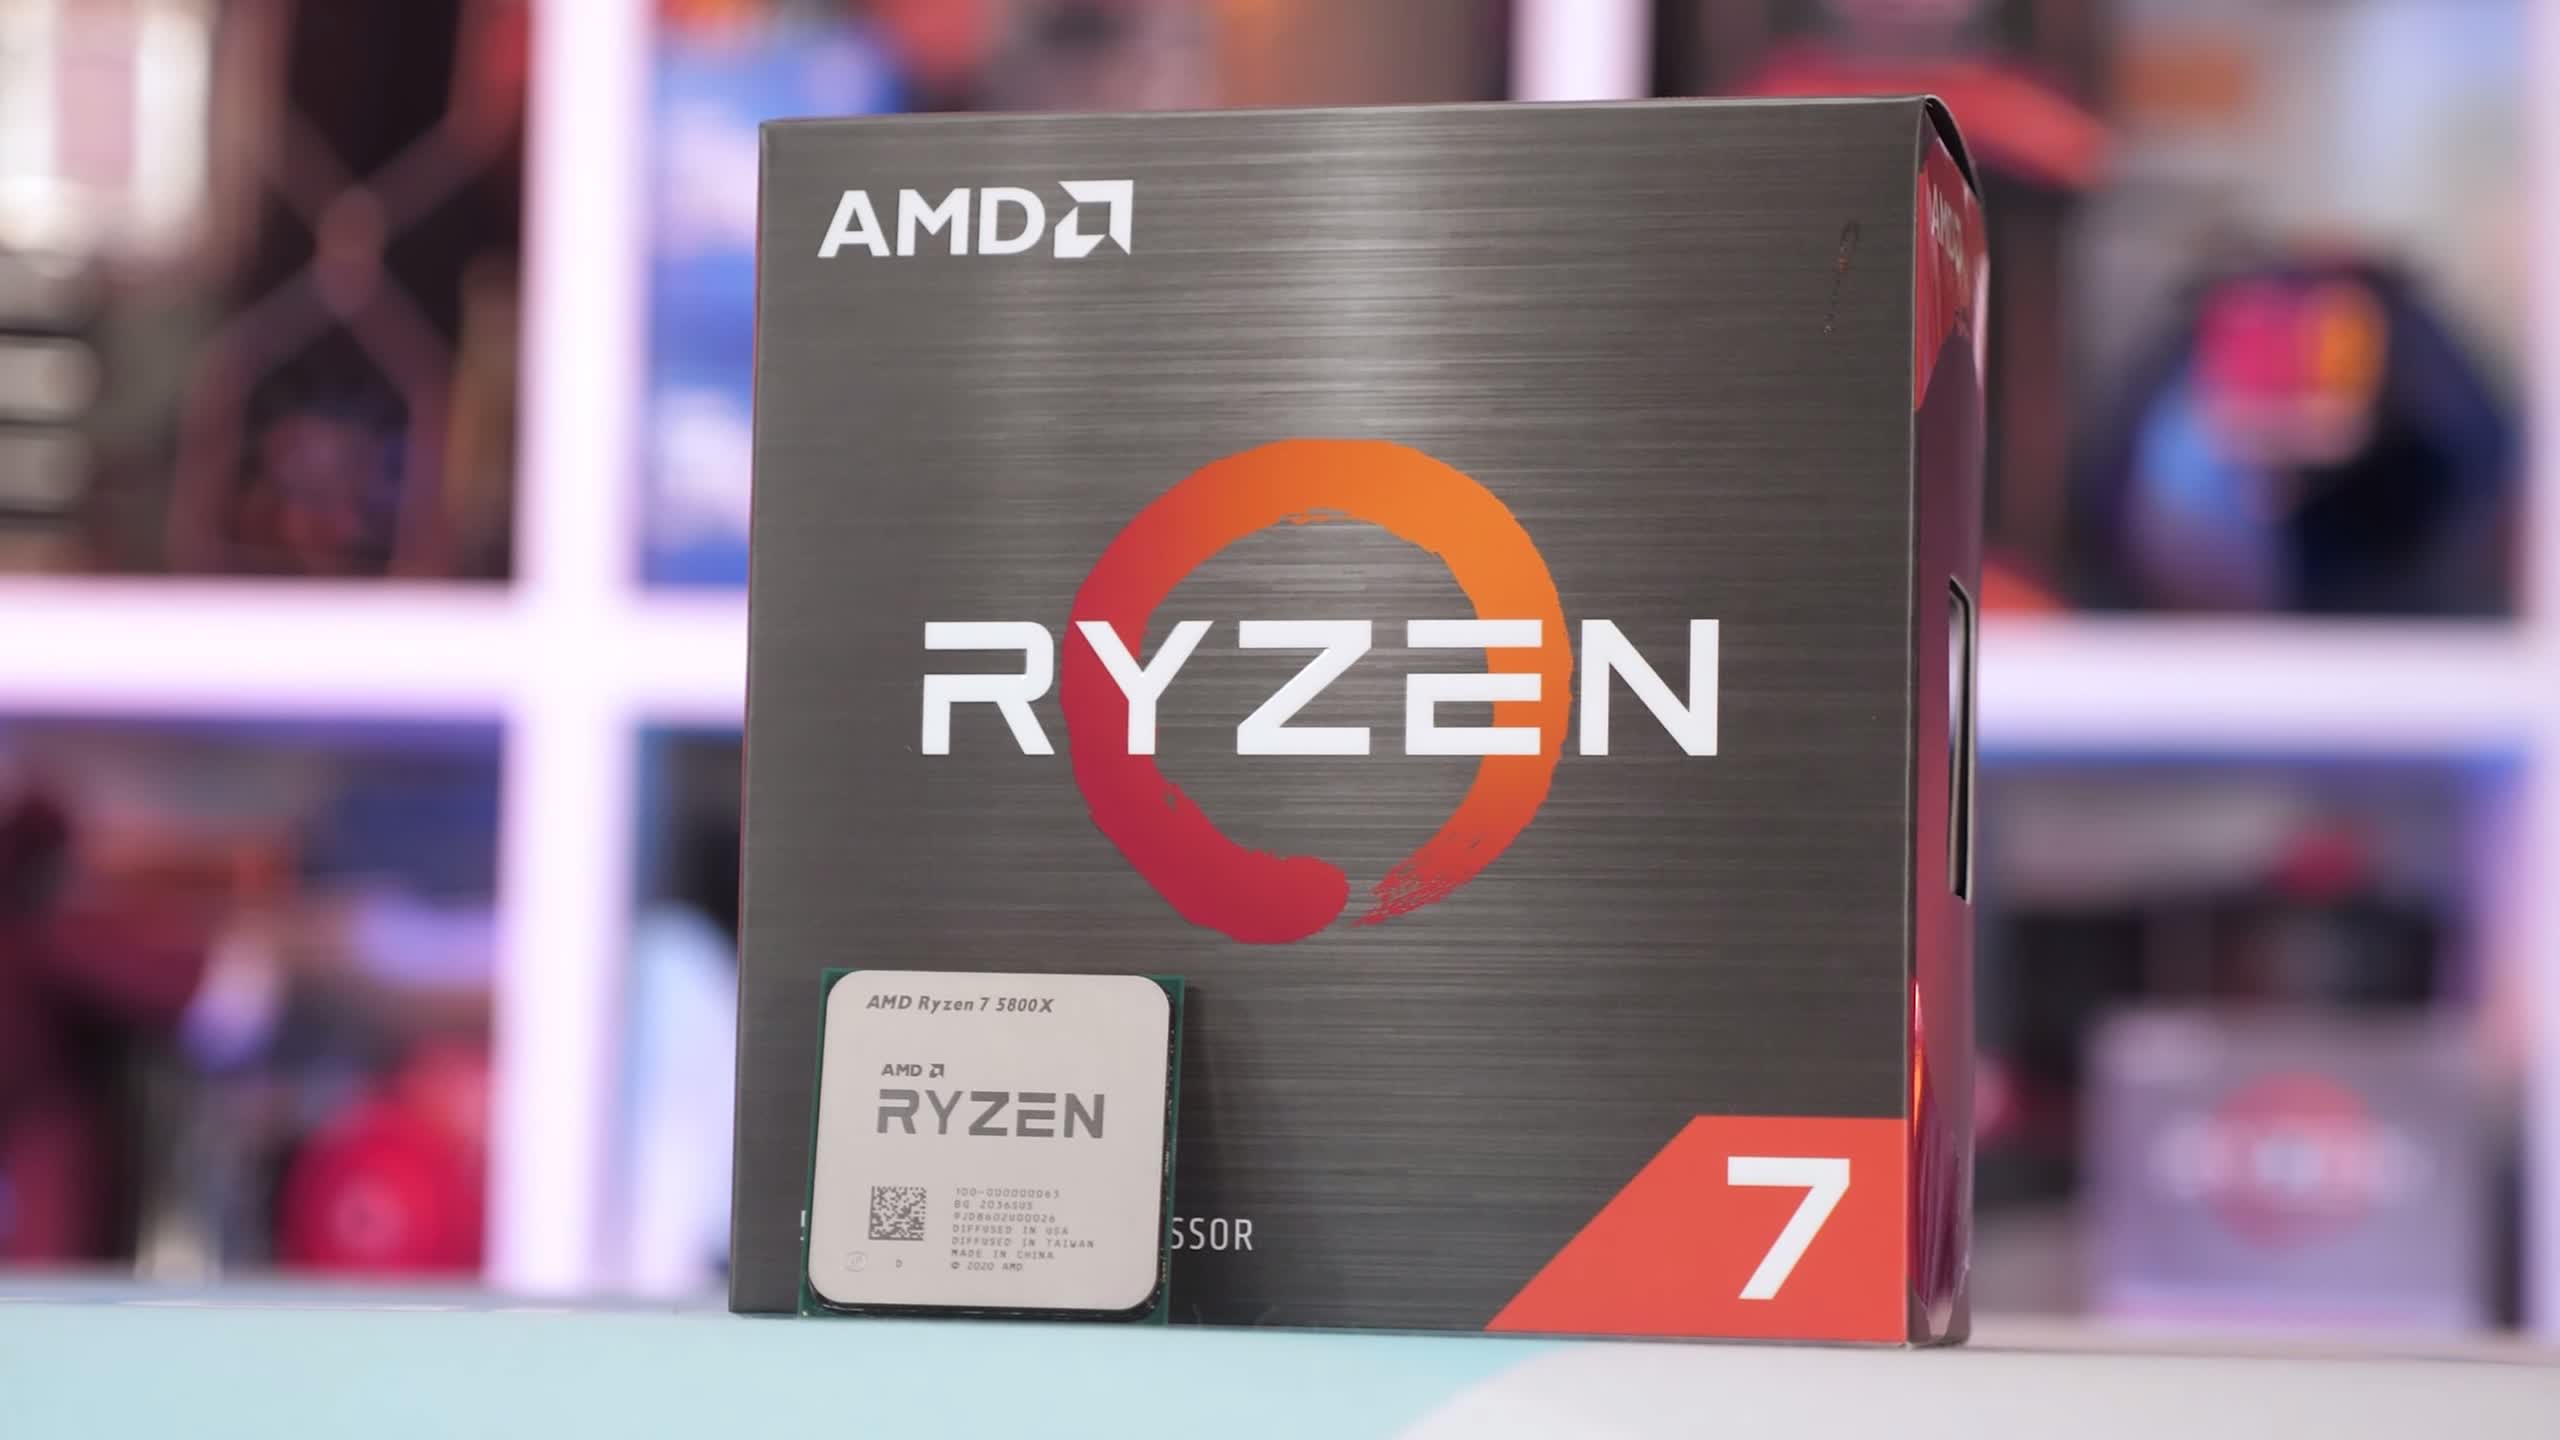 AMD Ryzen 7 5800X Review | TechSpot